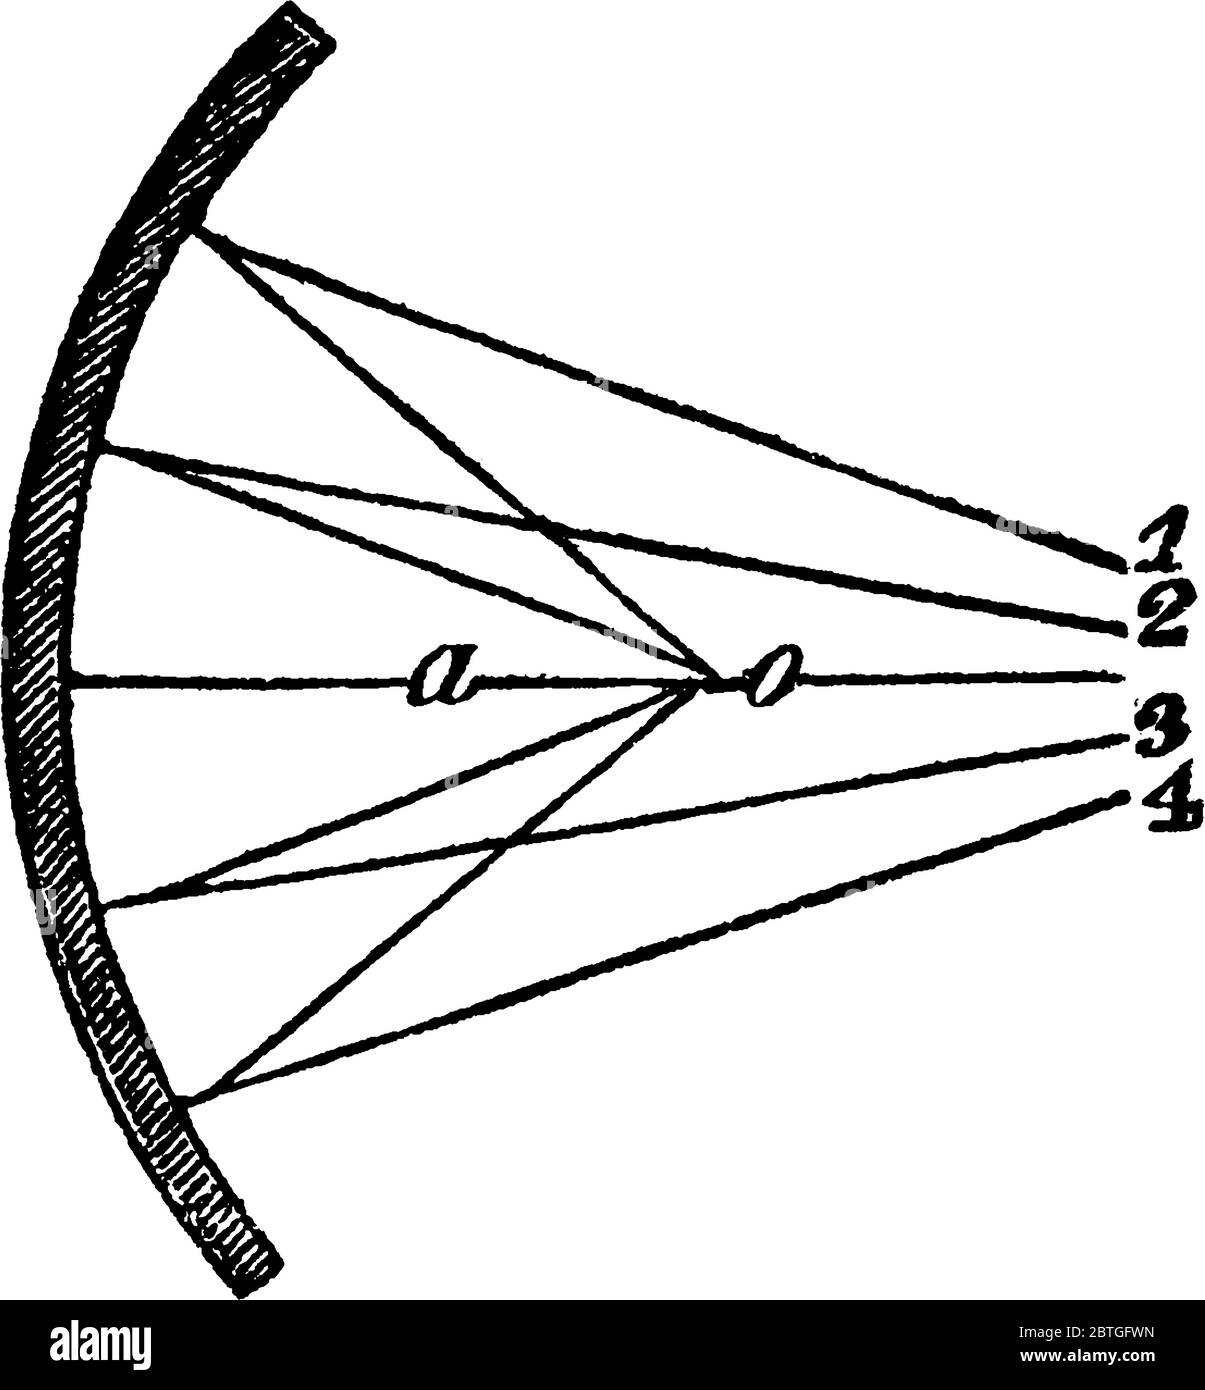 Una rappresentazione tipica dei raggi divergenti, '1, 2, 3, 4' forma un fuoco nel punto, 'o', in uno specchio concavo, disegno di linea vintage o incisione il Illustrazione Vettoriale